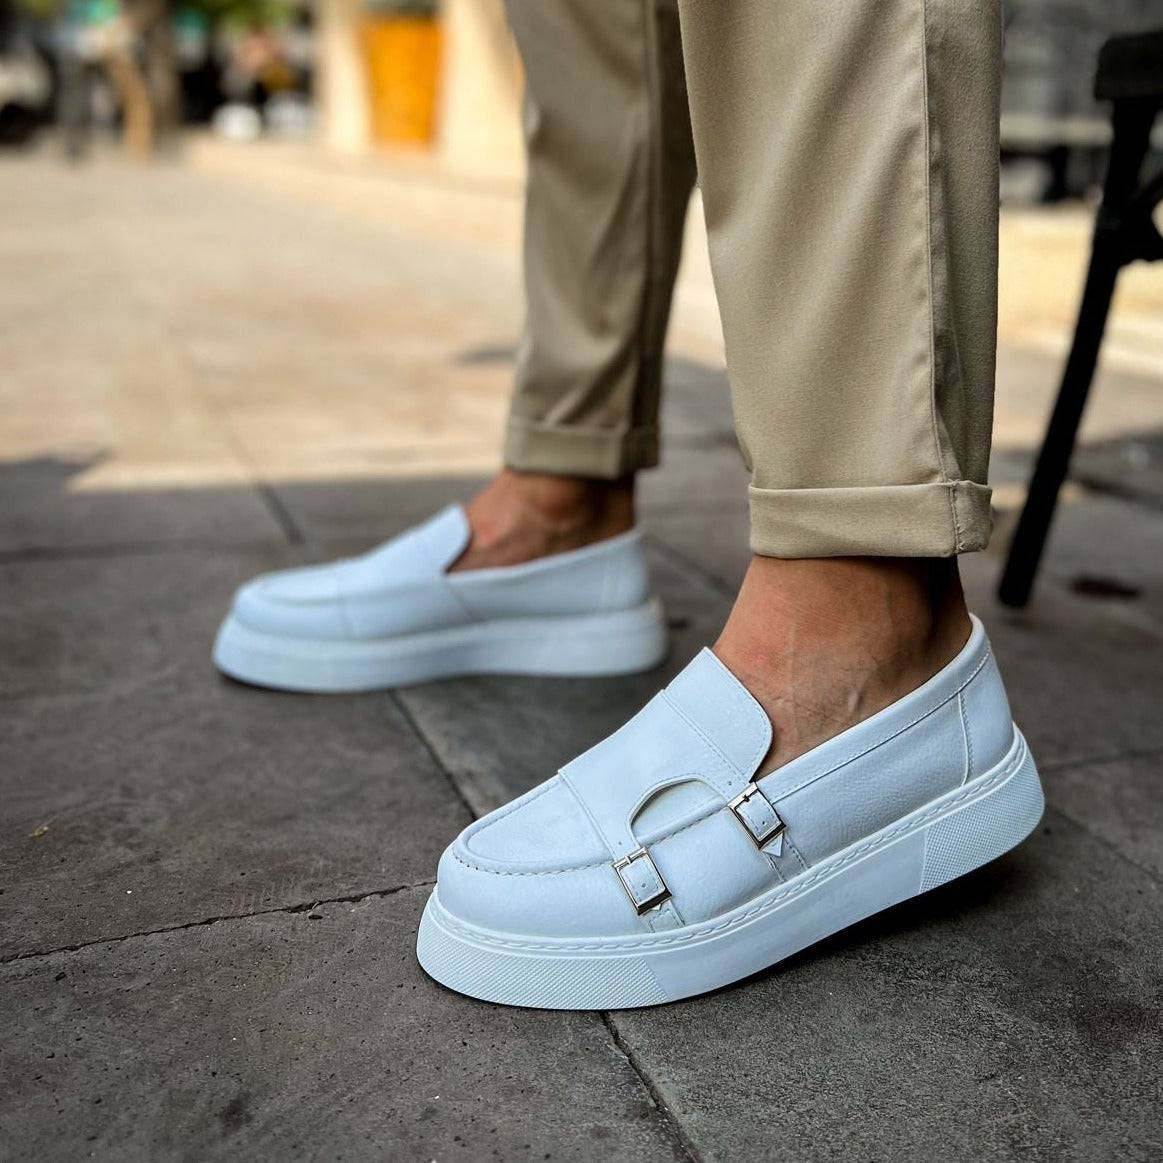 Men's Classic Fashionable Loafers by Apollo Moda | Zion Pristine Purity